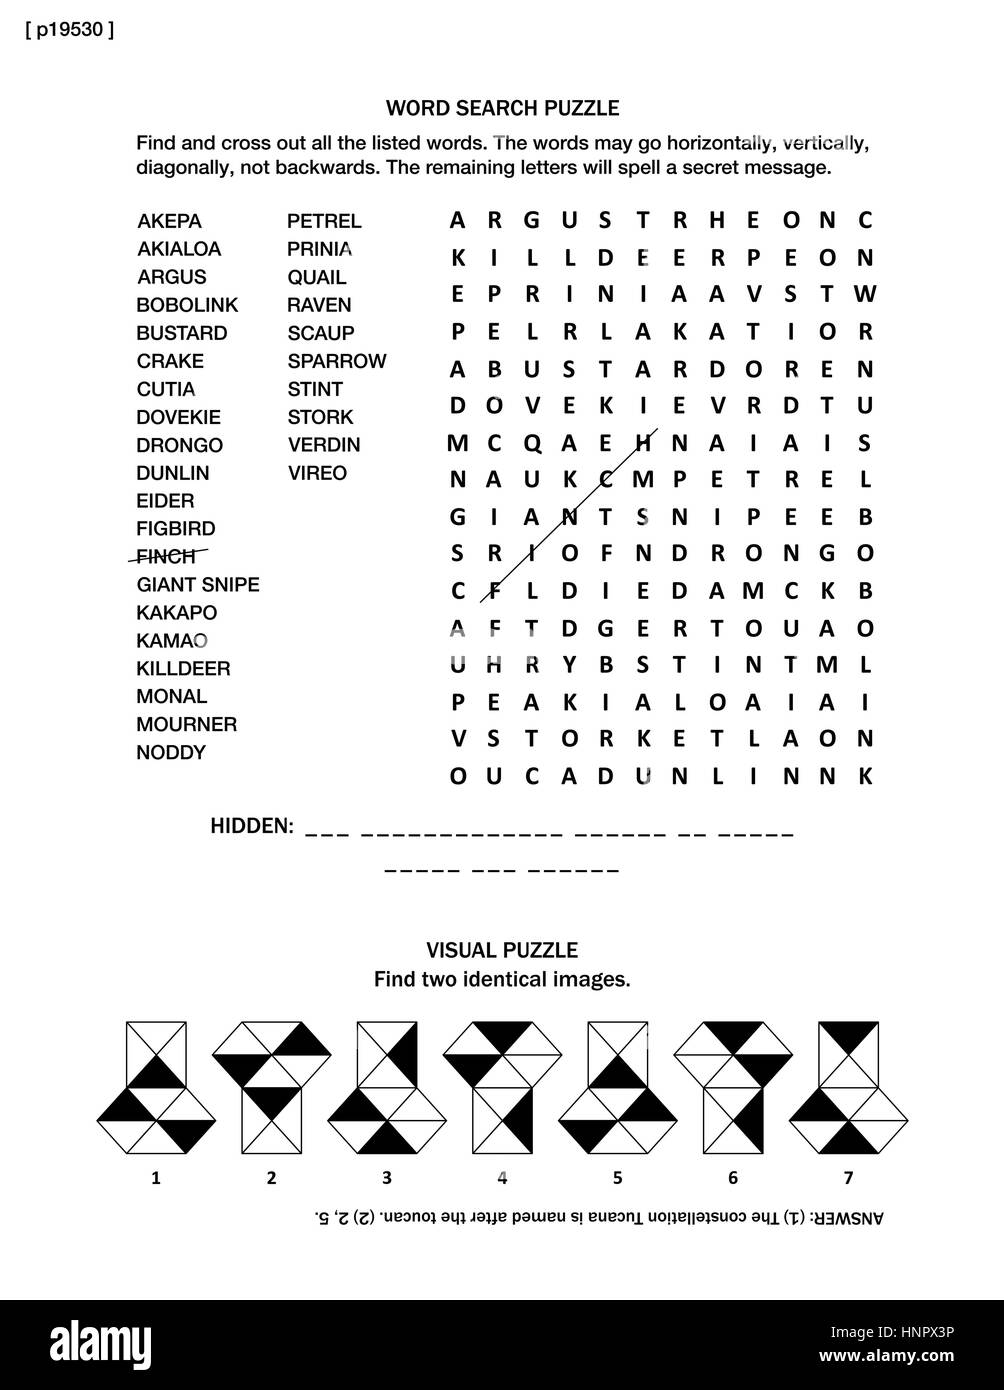 Página de puzzle con aves themed rompecabezas de búsqueda de palabra (en inglés) y visual Riddle. Blanco y negro, tamaño A4 o carta. Respuesta incluido. Ilustración del Vector